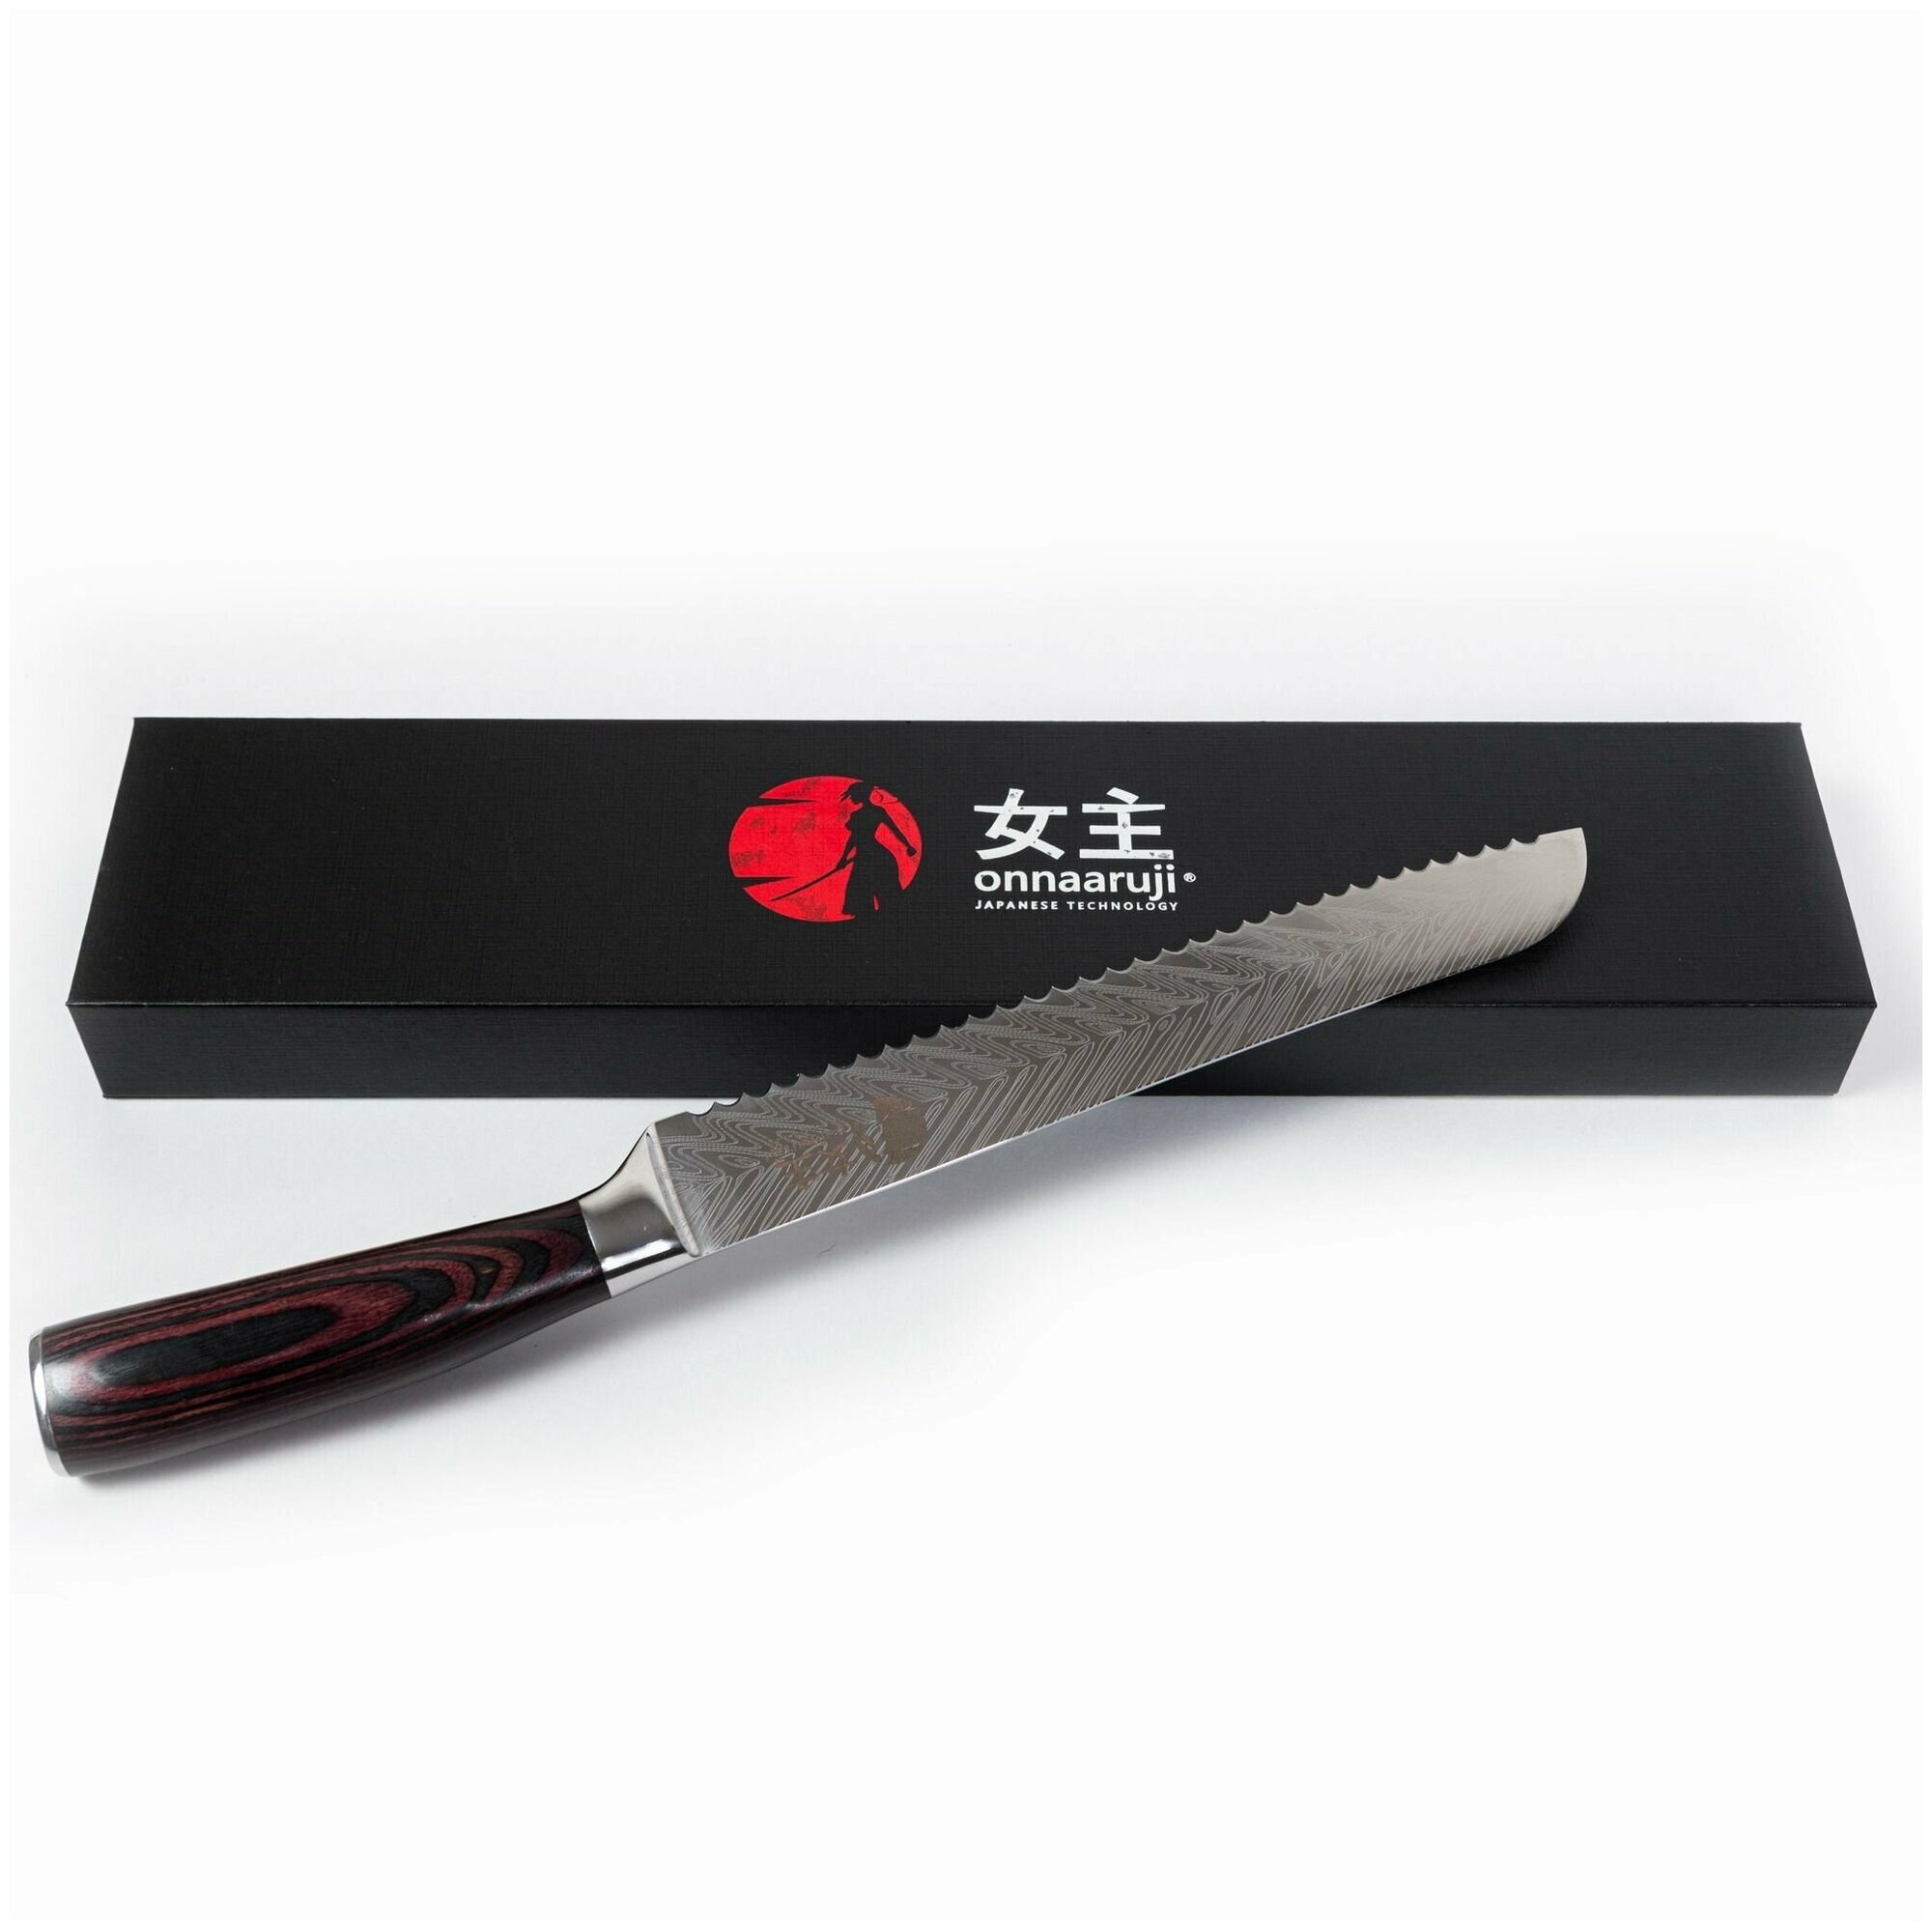 Нож кухонный профессиональный для хлеба и бисквита поварской Onnaaruji. 20см.